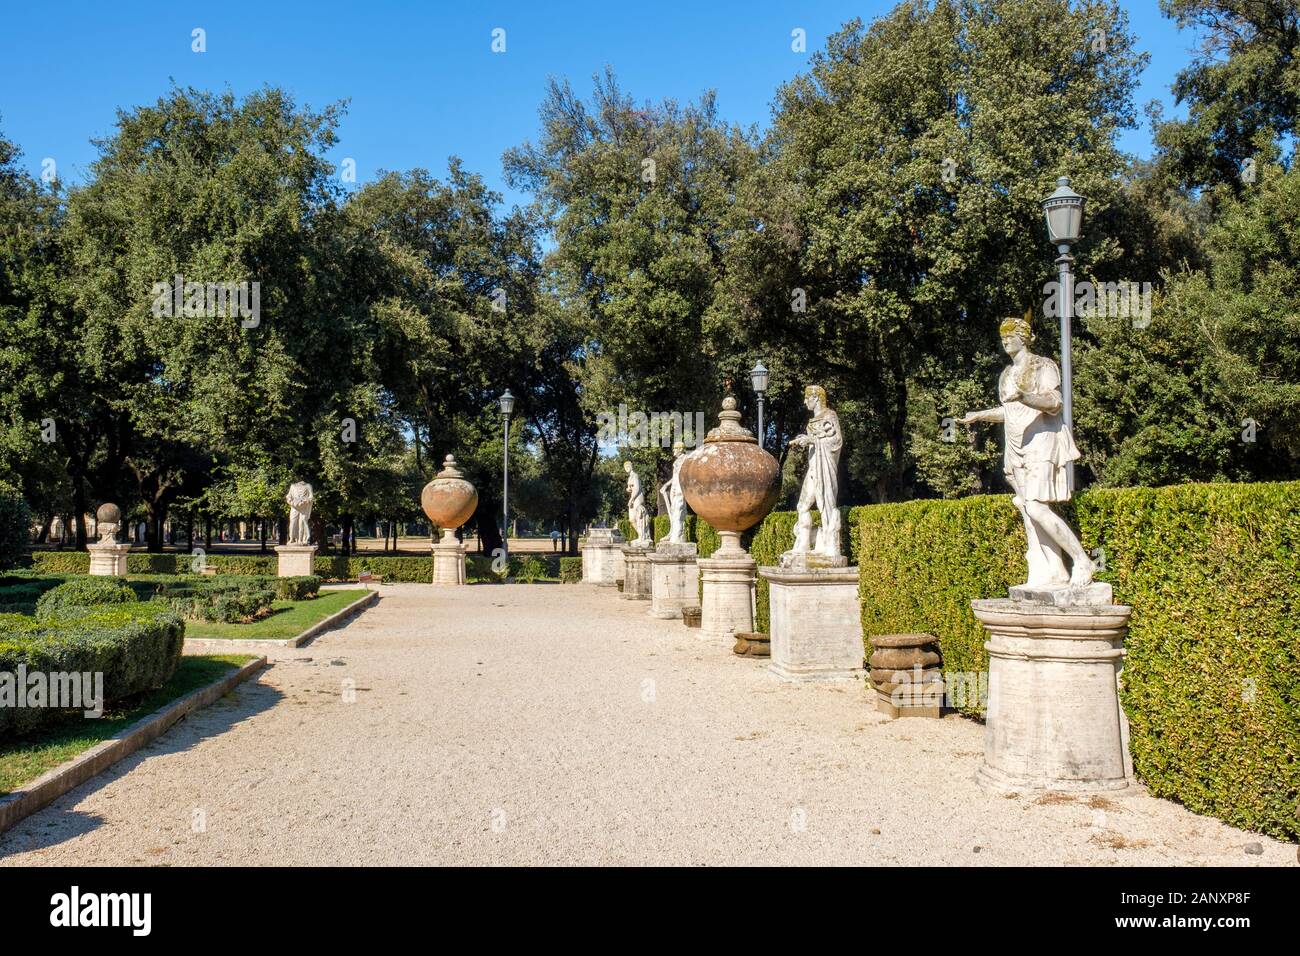 Gärten und römische Statuen der Gallerie Borghese, Gallerie Borghese Museum, Villa Borghese, Rom, Italien Stockfoto